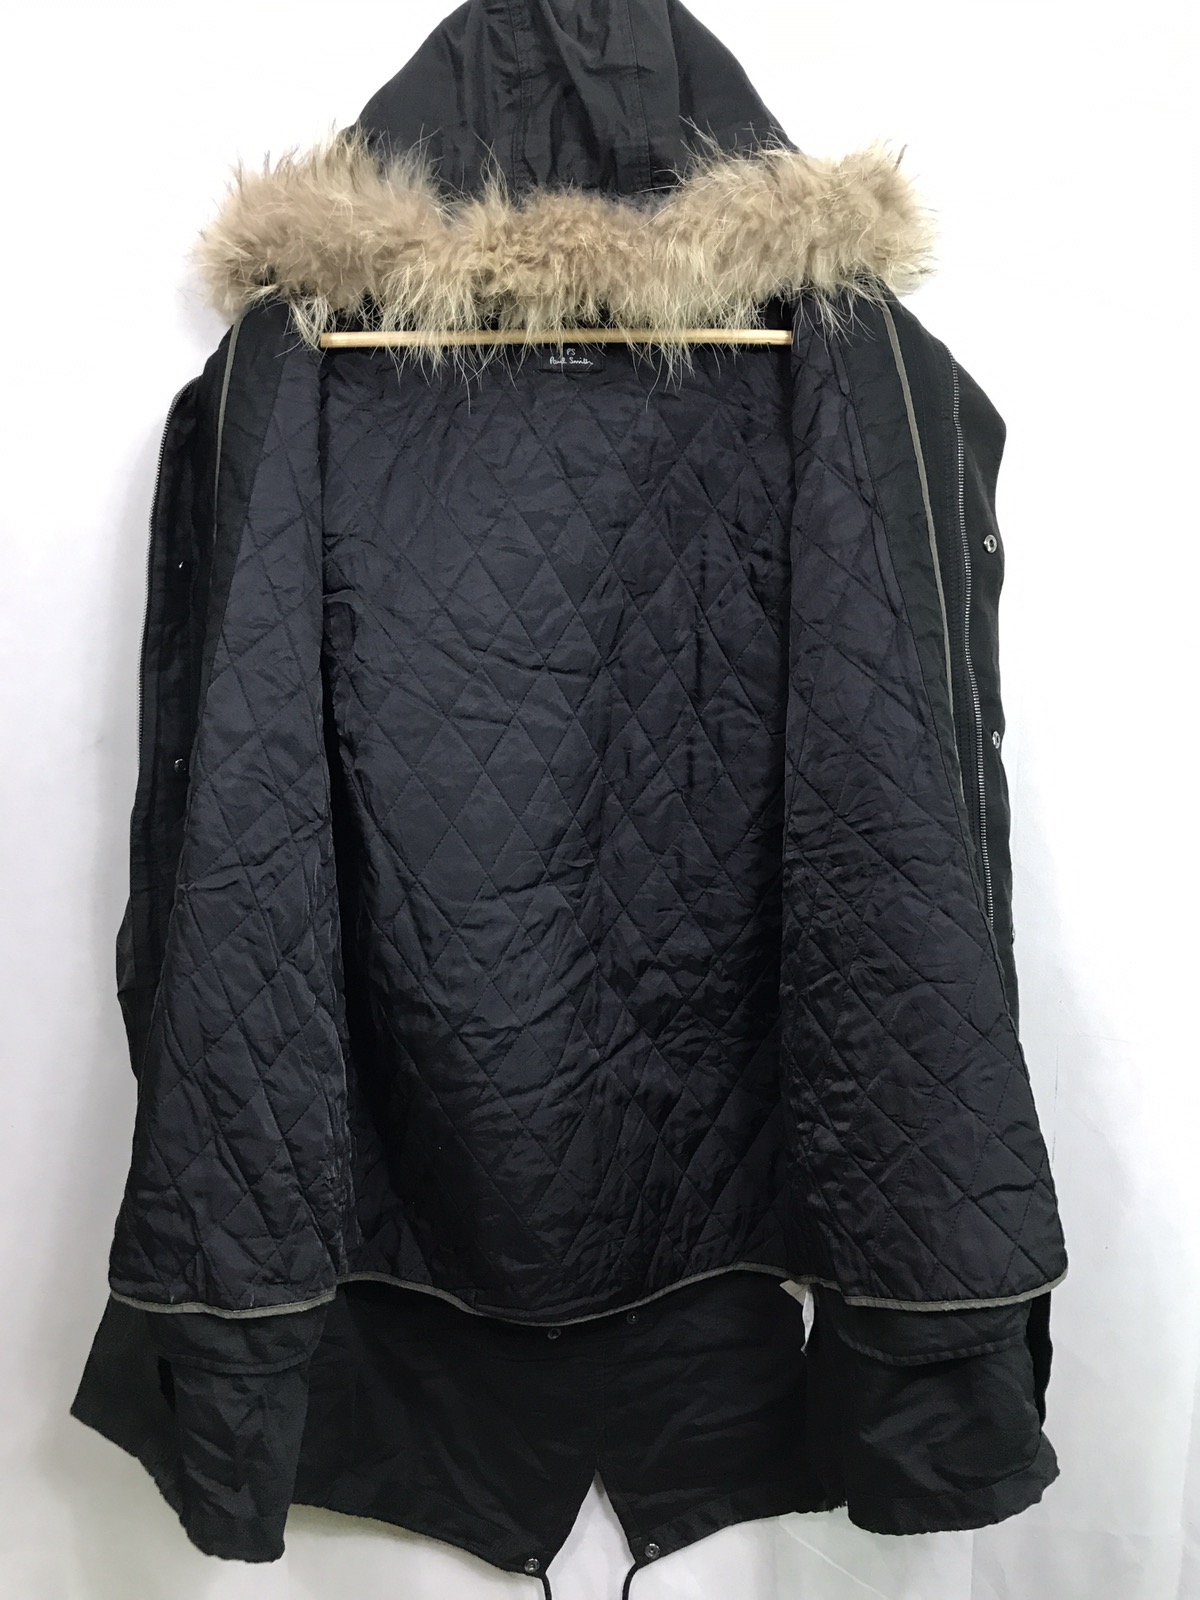 Paul smith faux fur parkas jacket - 6